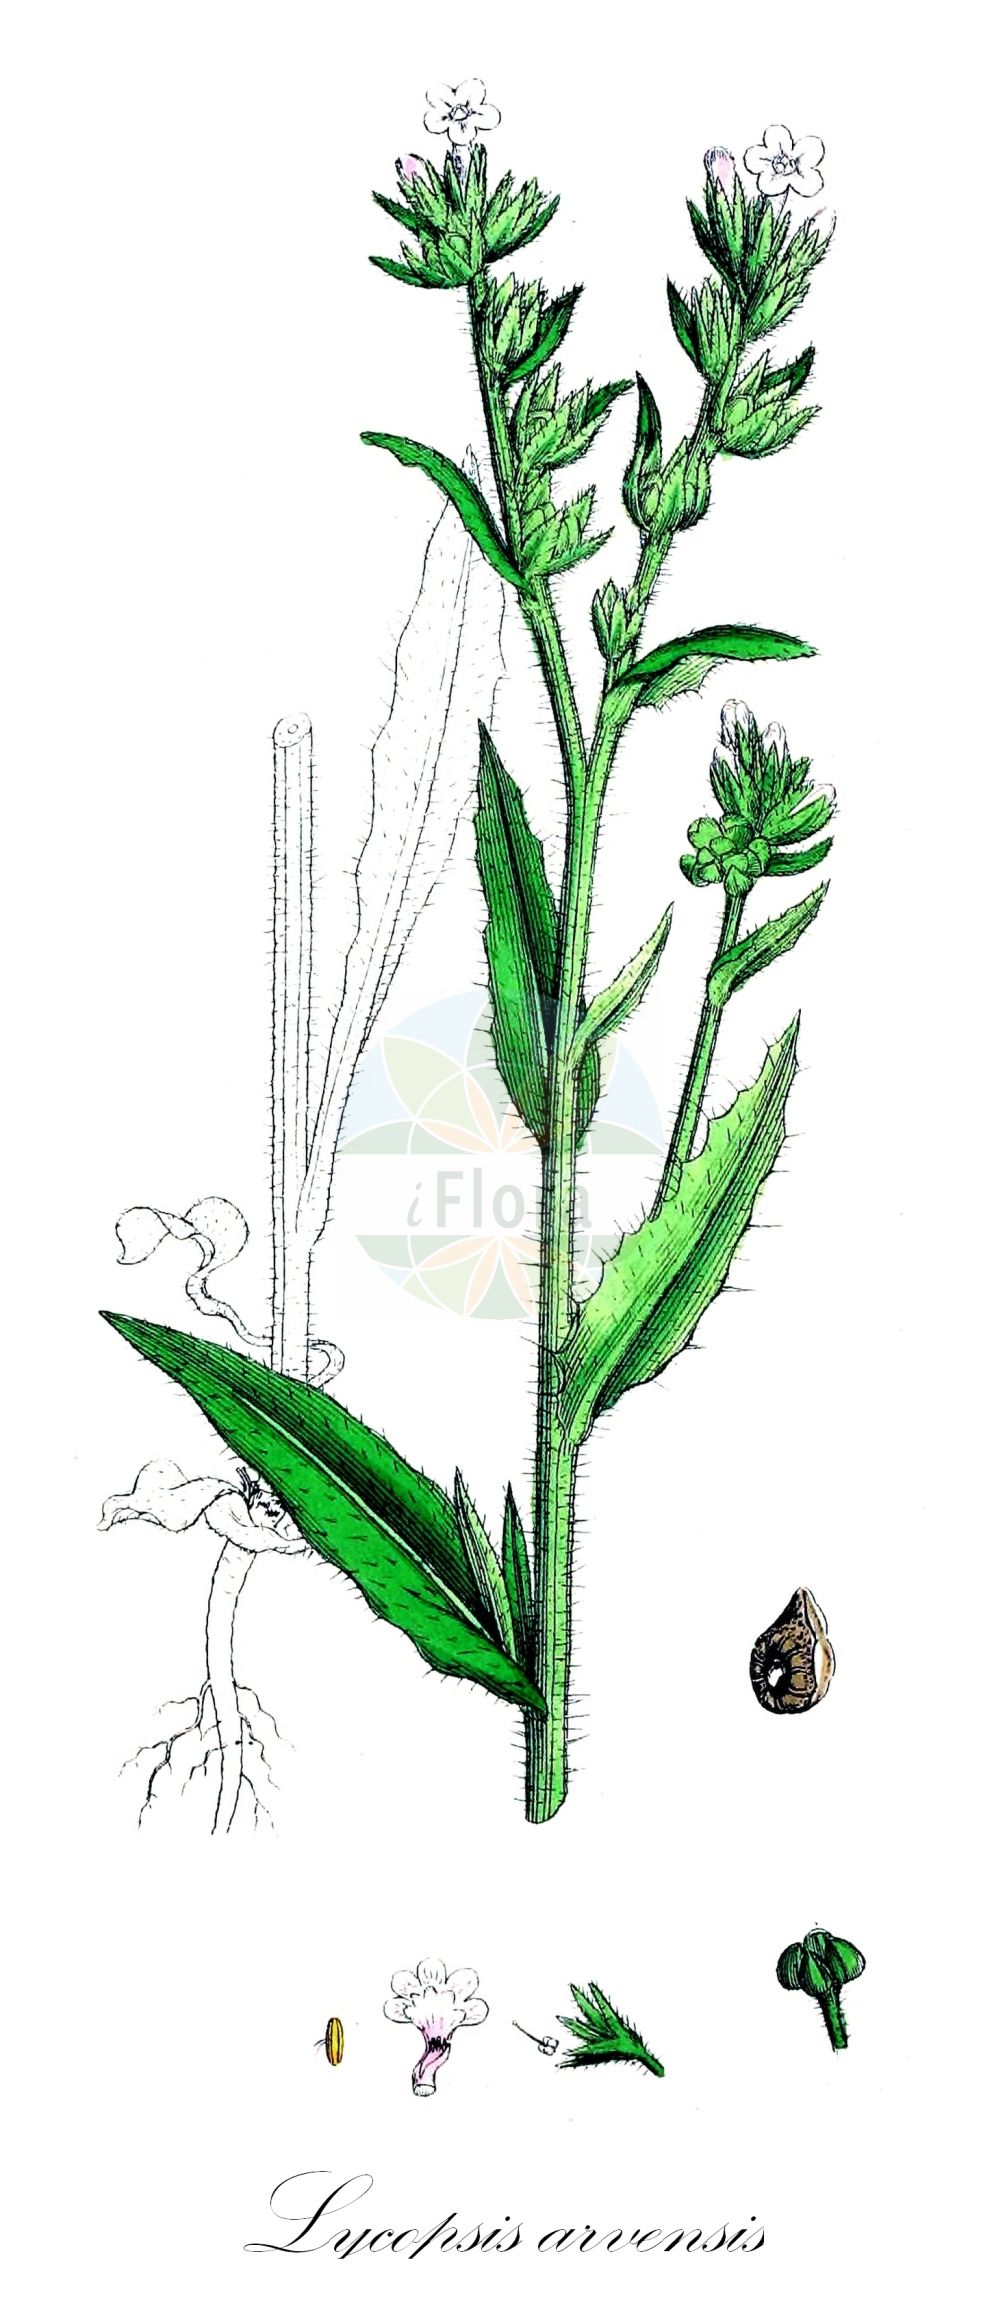 Historische Abbildung von Lycopsis arvensis (Acker-Krummhals - Bugloss). Das Bild zeigt Blatt, Bluete, Frucht und Same. ---- Historical Drawing of Lycopsis arvensis (Acker-Krummhals - Bugloss). The image is showing leaf, flower, fruit and seed.(Lycopsis arvensis,Acker-Krummhals,Bugloss,Anchusa arvensis,Anchusa guculeacii,Anchusa rigolei,Lycopsis arvensis,Lycopsis arvensis subsp. occidentalis,Acker-Krummhals,Bugloss,Common Bugloss,Small Bugloss,Wild Bugloss,Lycopsis,Boraginaceae,Raublattgewächse,Forget-me-Not family,Blatt,Bluete,Frucht,Same,leaf,flower,fruit,seed,Sowerby (1790-1813))